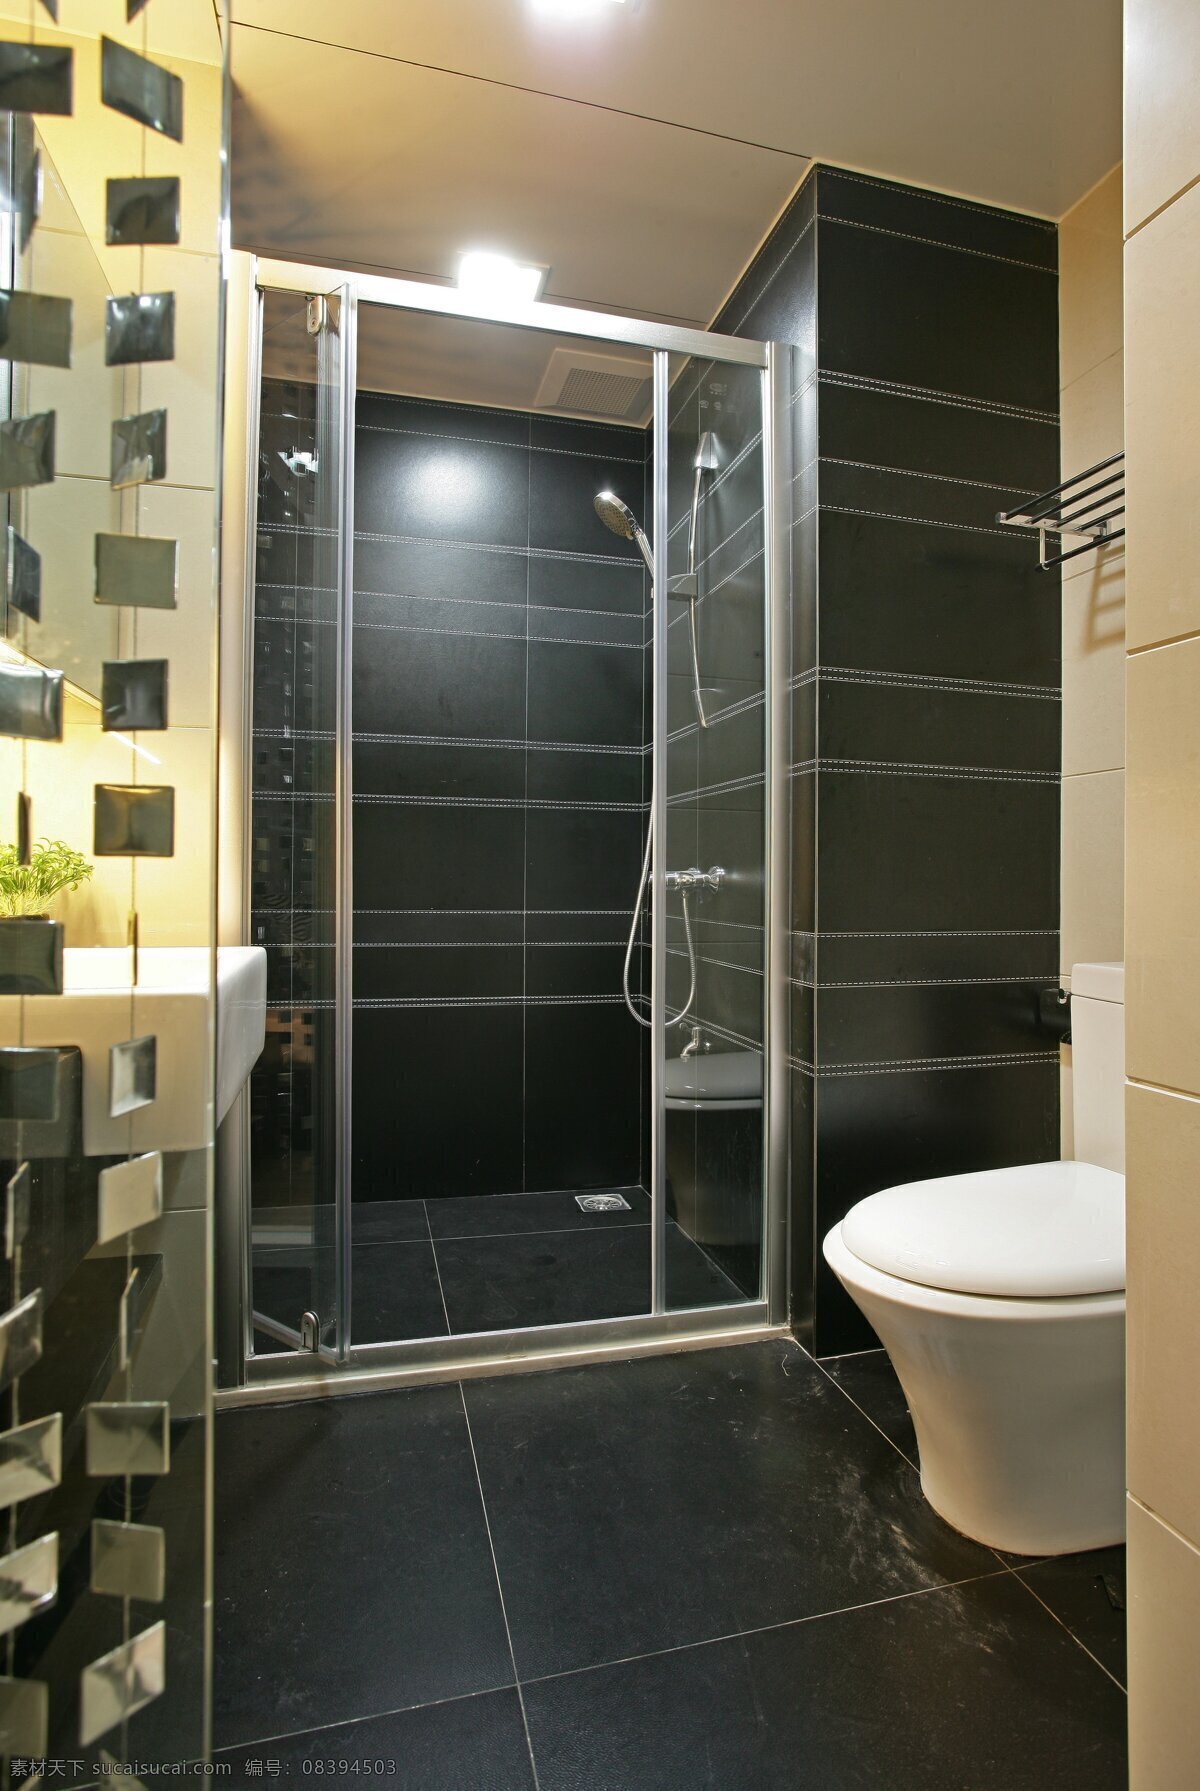 简约 风 室内设计 淋浴室 效果图 现代 浴室 马桶 推拉门 家装